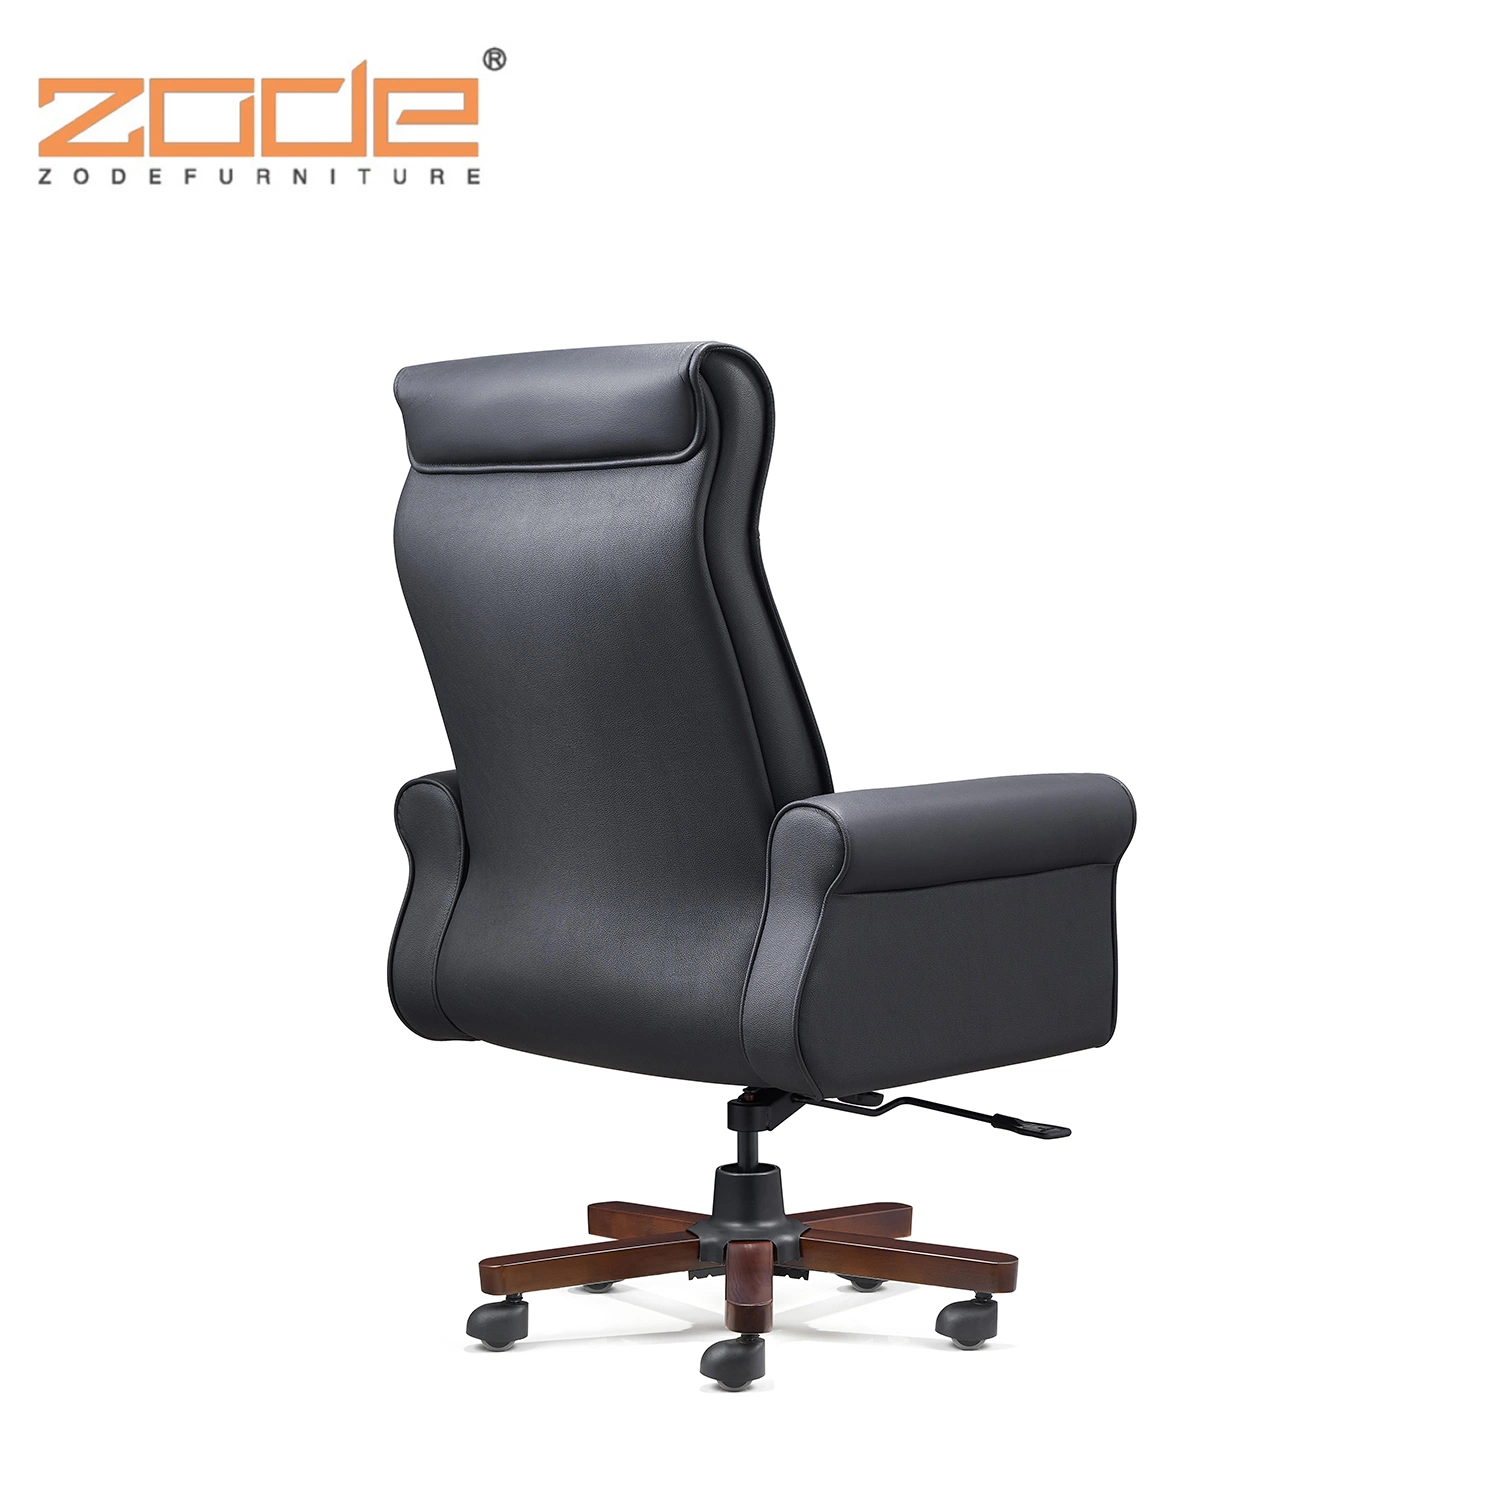 Equipo Giratorio clásico Zode silla ejecutiva de la Oficina de cuero